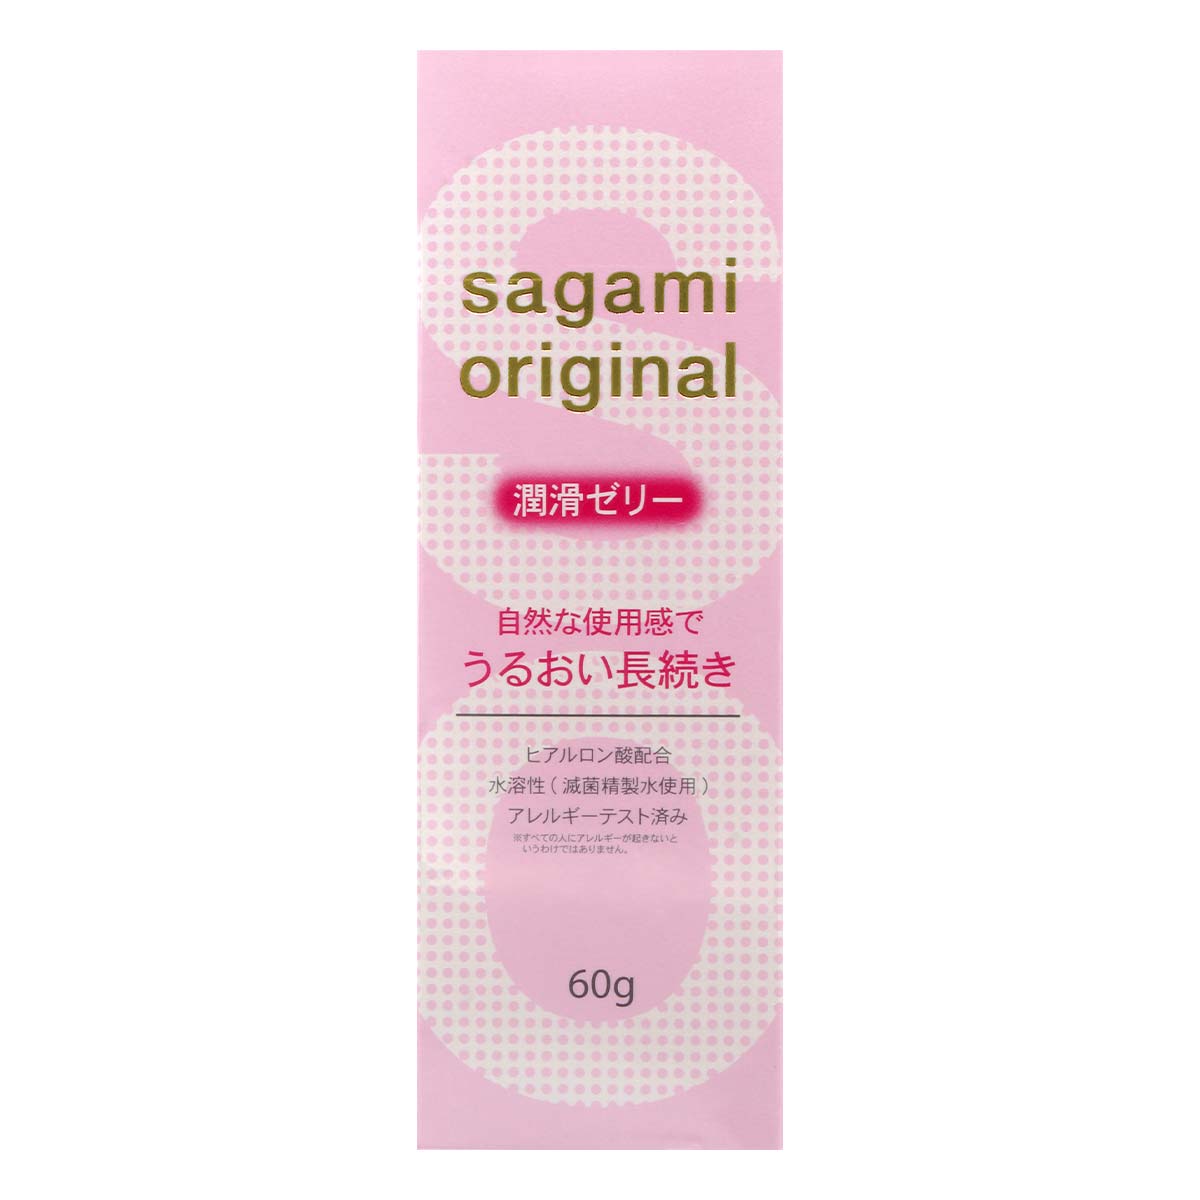 Sagami Original Lubricating Gel 60g Water-based Lubricant-p_2